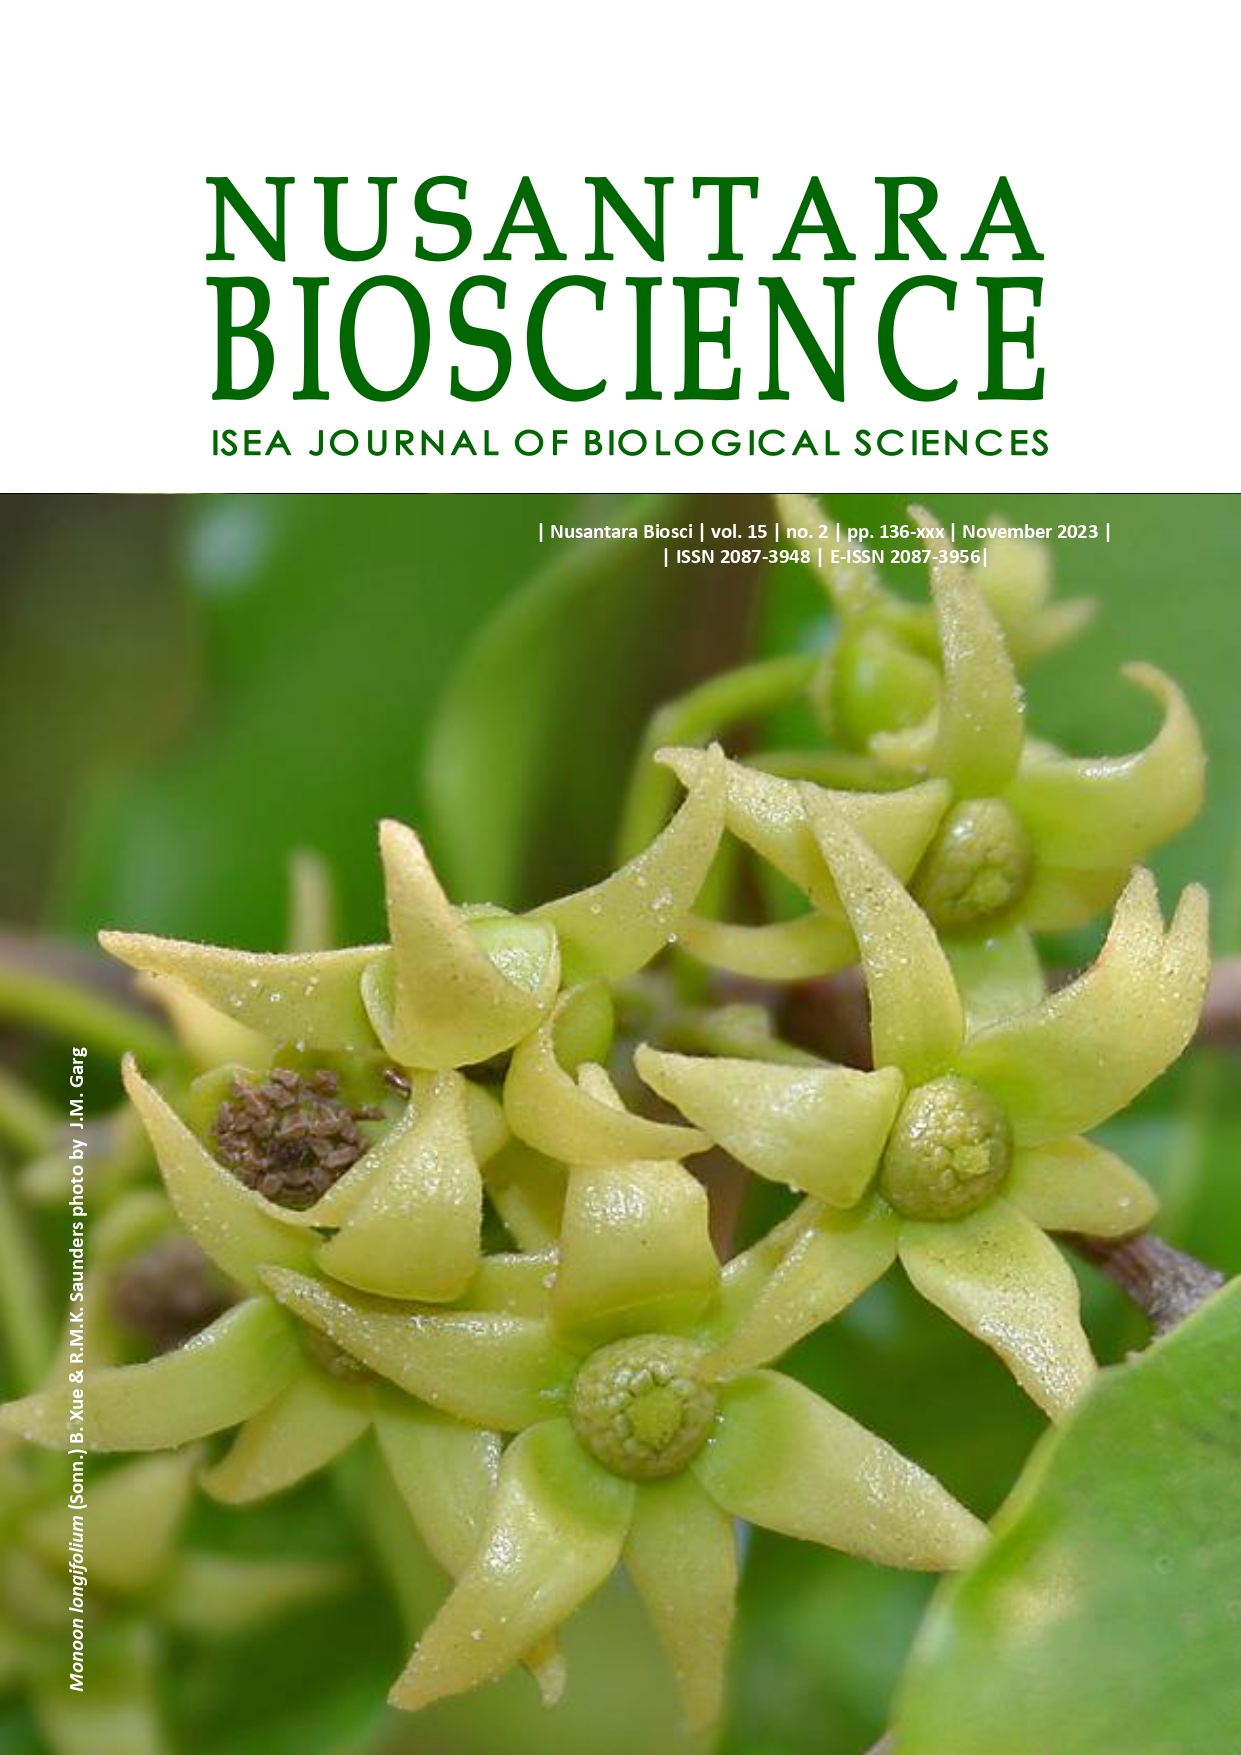 Nusantara Bioscience